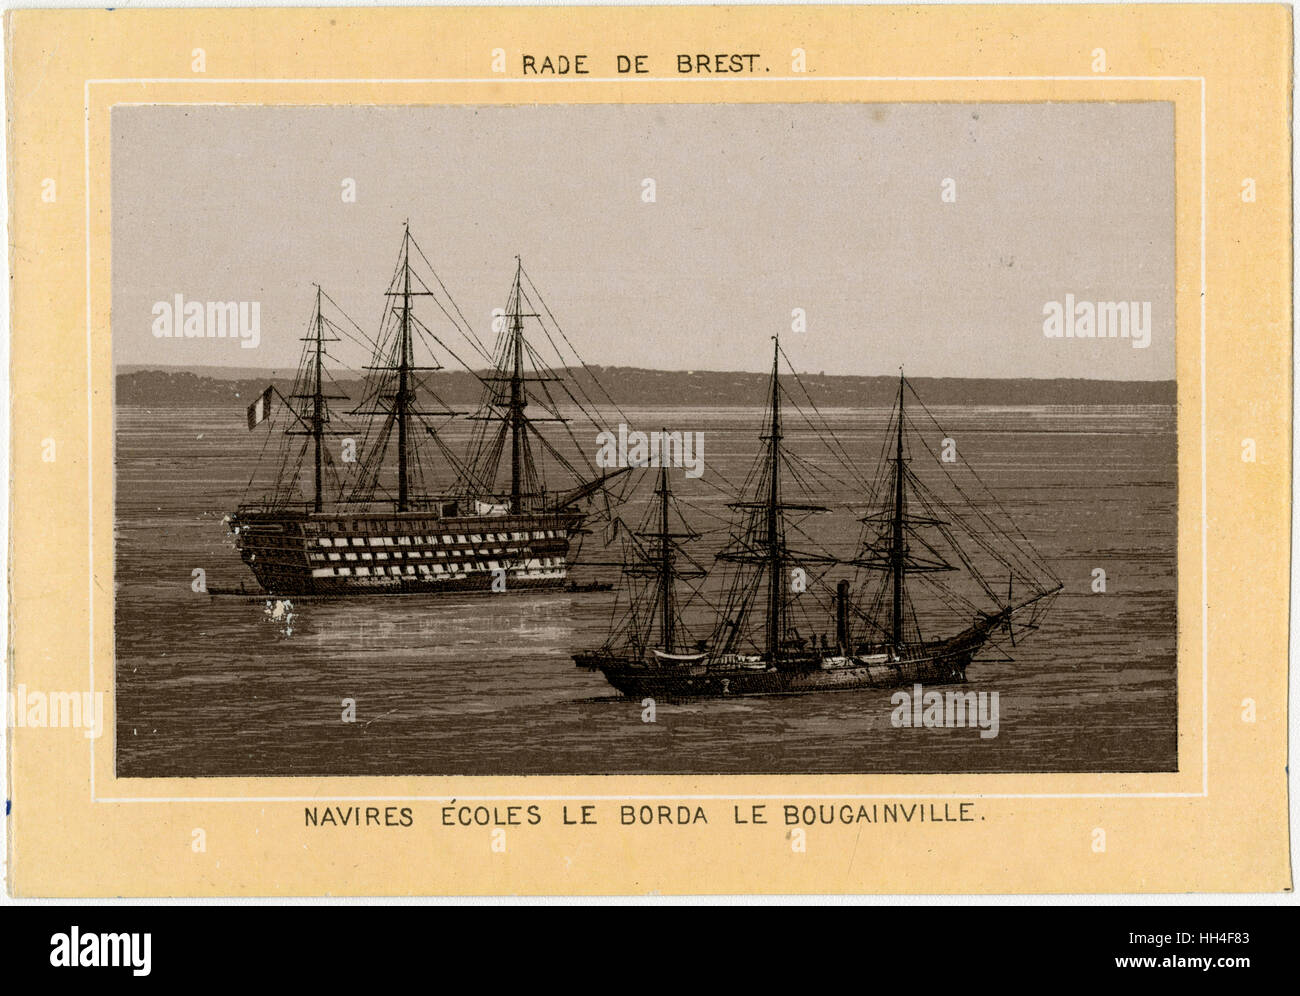 Académie navale française - Brest, France - la Borda Banque D'Images